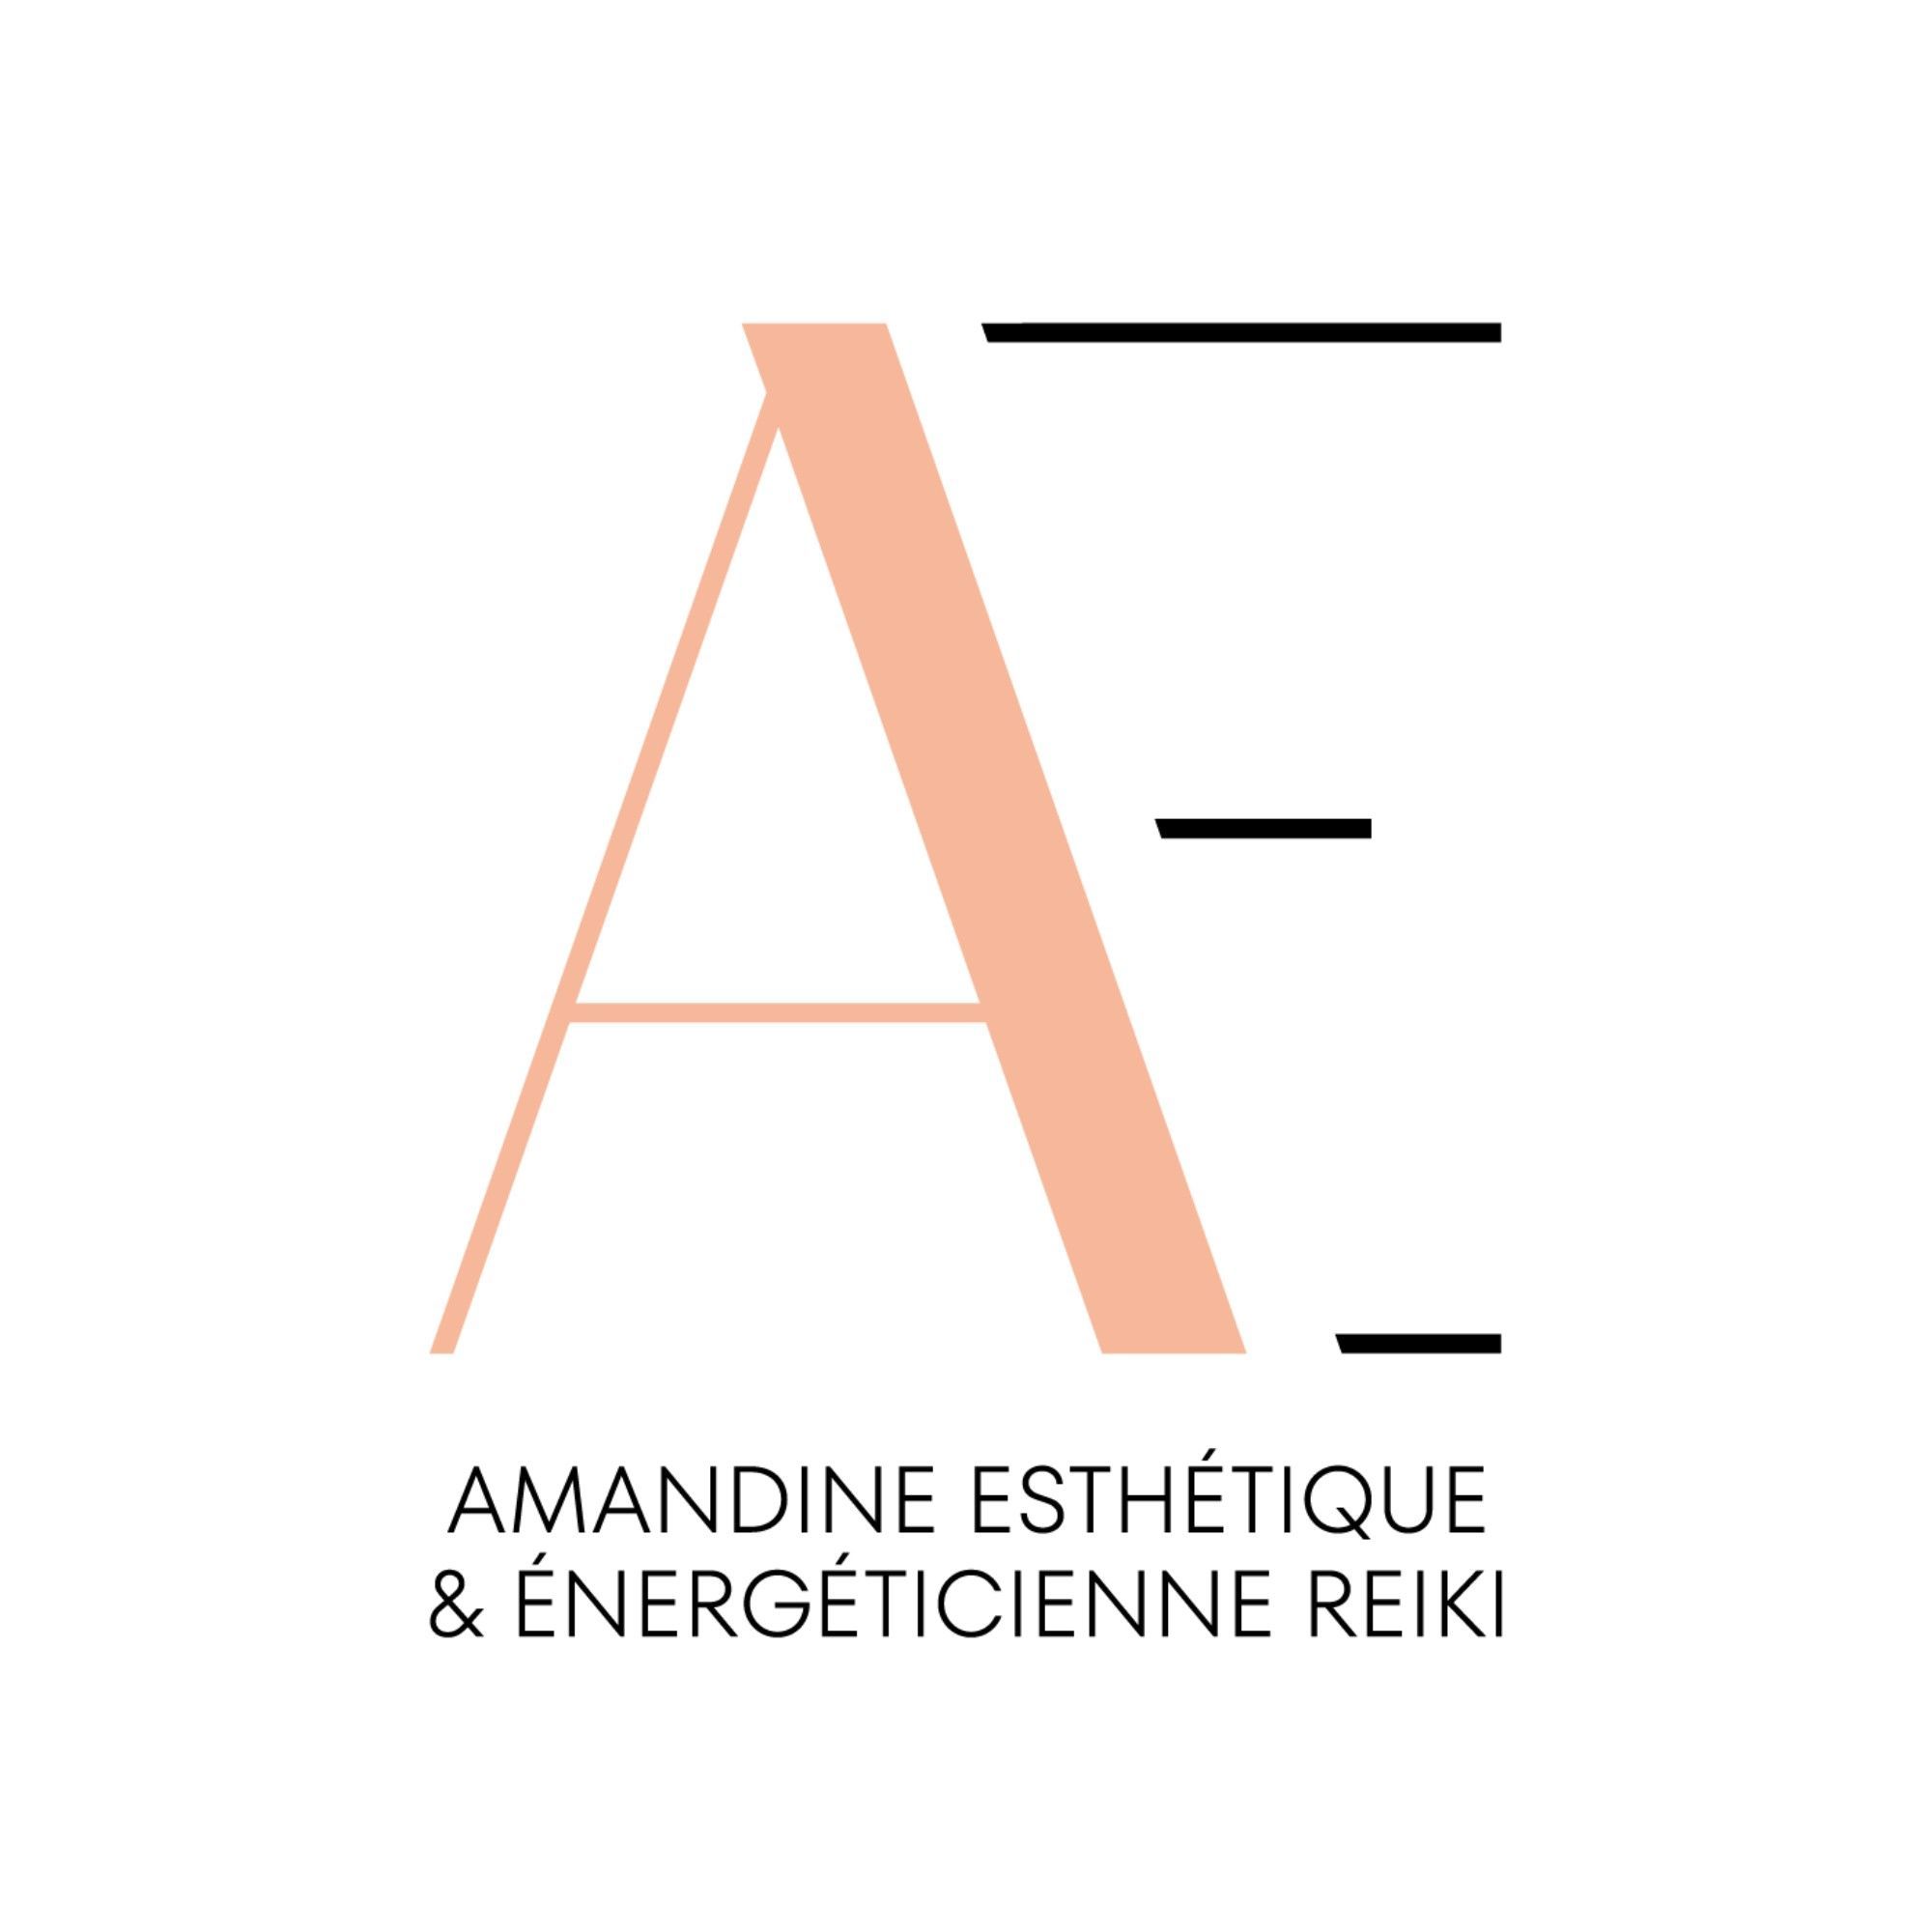 Amandine Esthétique Énergéticienne Reiki, 1 Rue Guy Mocquet, 38130, Échirolles